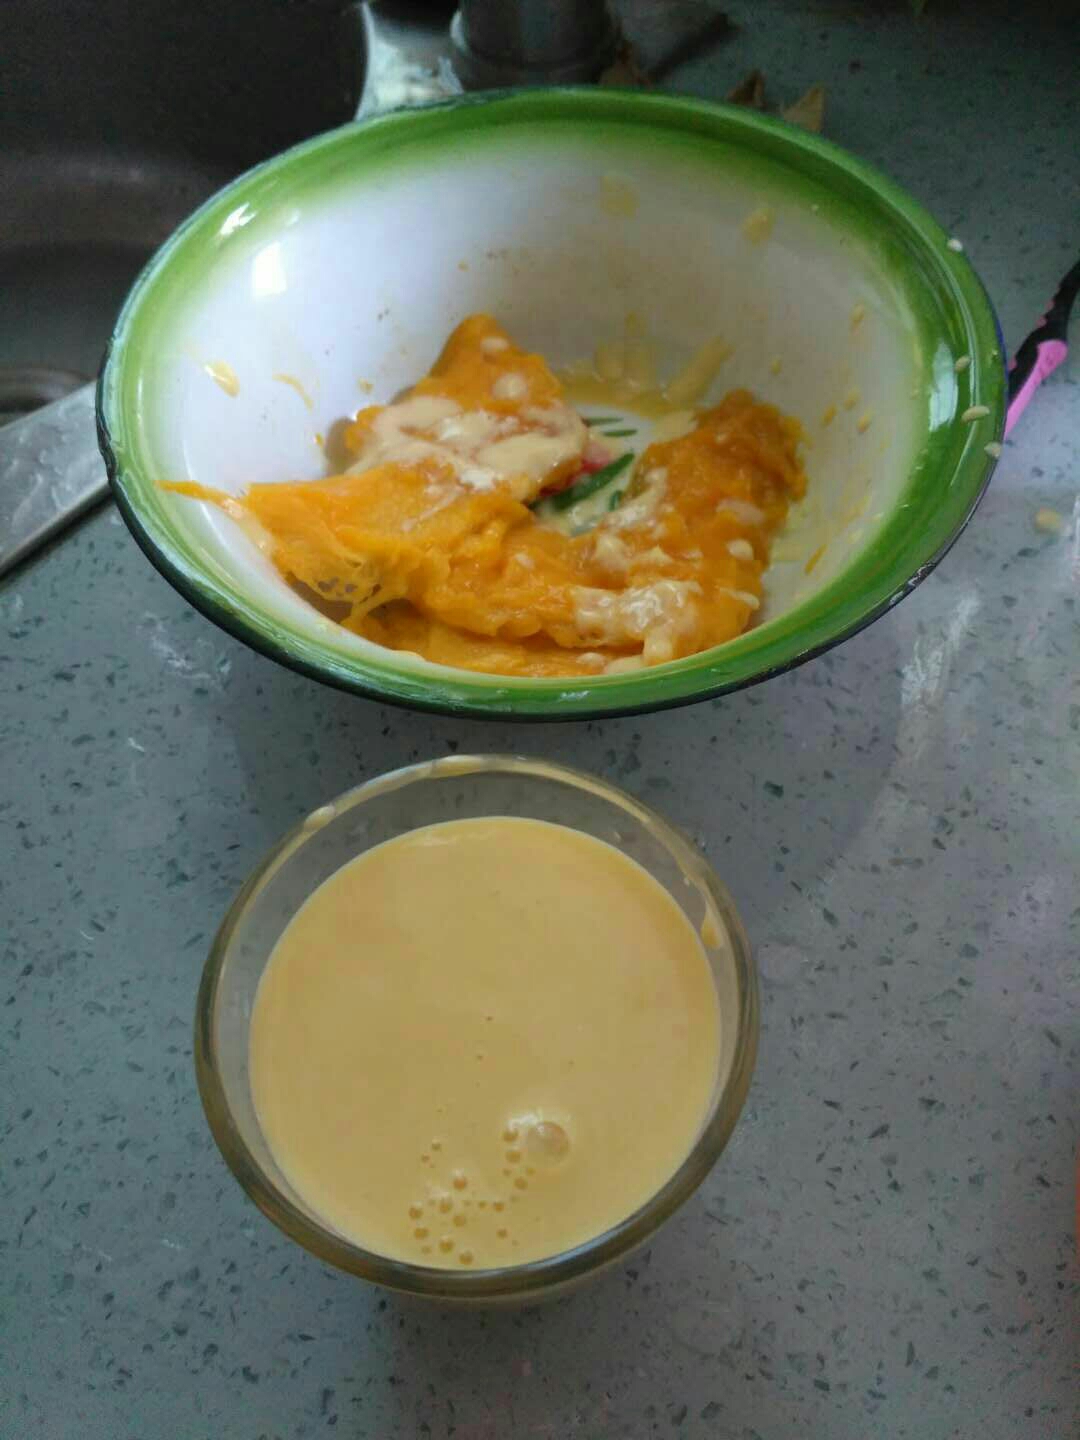 牛奶芒果汁